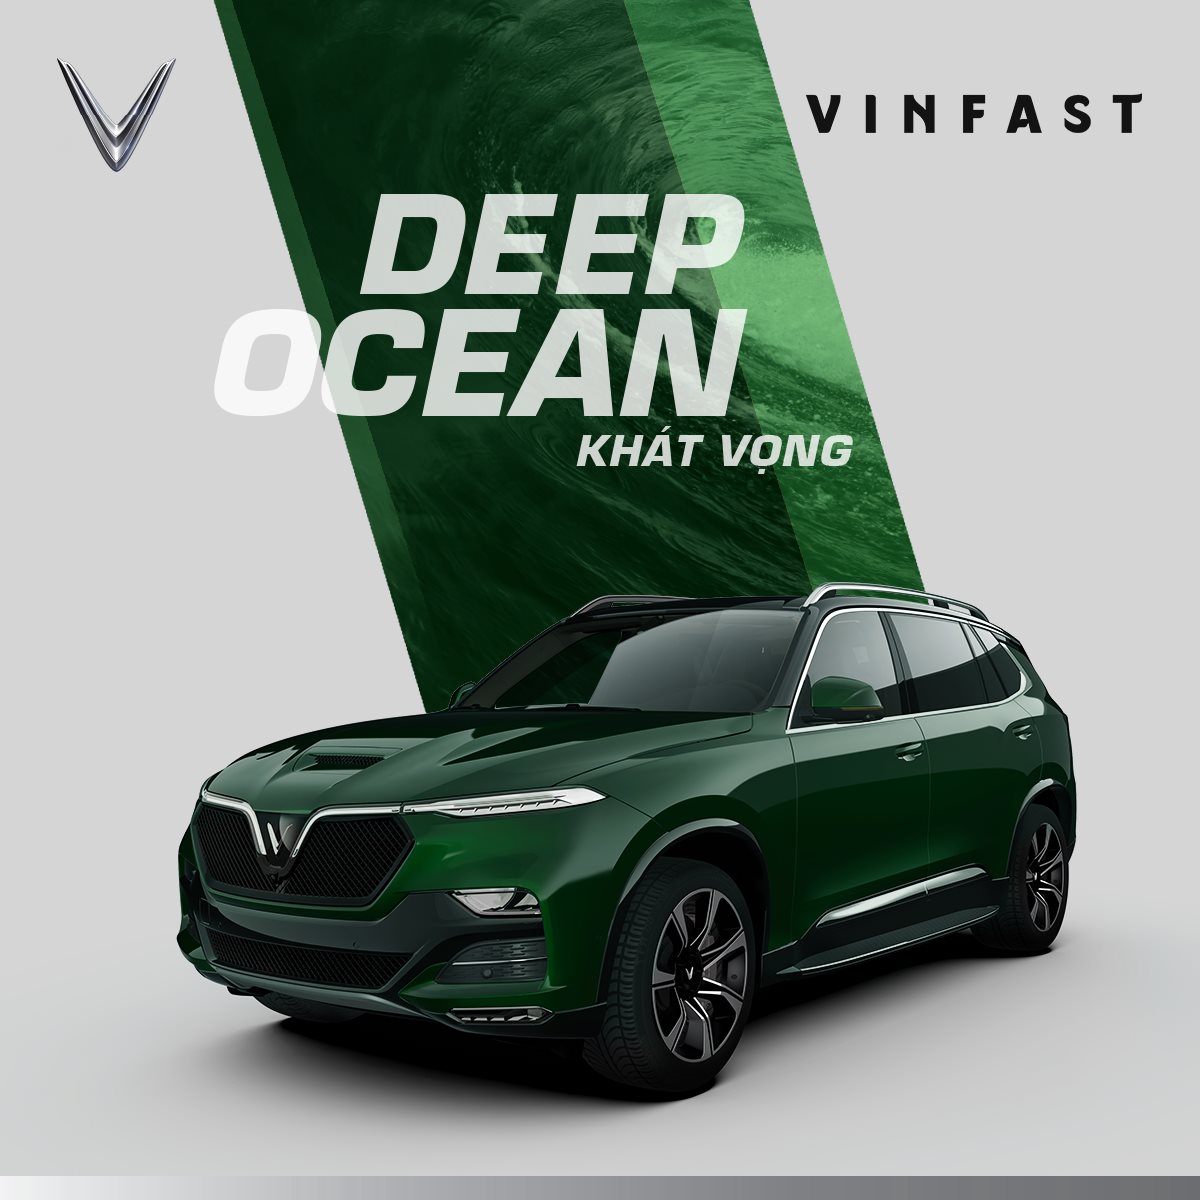 VinFast President: Những chiếc xe VinFast mang đến sự khác biệt hoàn toàn so với các thương hiệu xe hơi trên thị trường. Tận hưởng những đường cong và sự cân bằng hoàn hảo của VinFast President trong bức ảnh này, và cảm nhận sự sang trọng và phong cách đến từ Việt Nam.